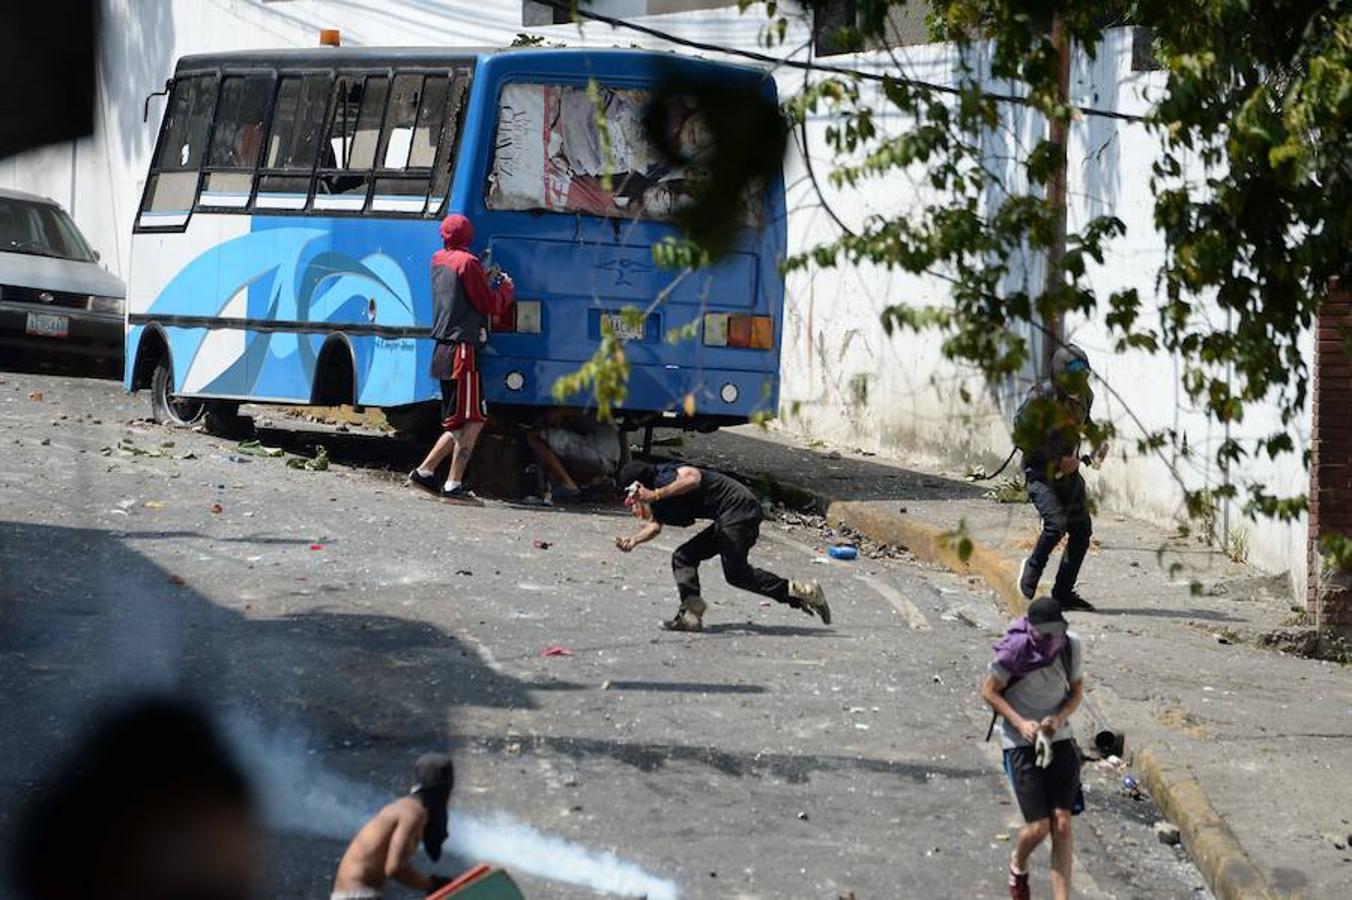 Las imágenes más dramáticas de la sublevación militar en Venezuela. Un grupo de manifestantes lanza objetos a las fuerzas de seguridad bolivarianas y se protege tras un autobús en parte calcinado